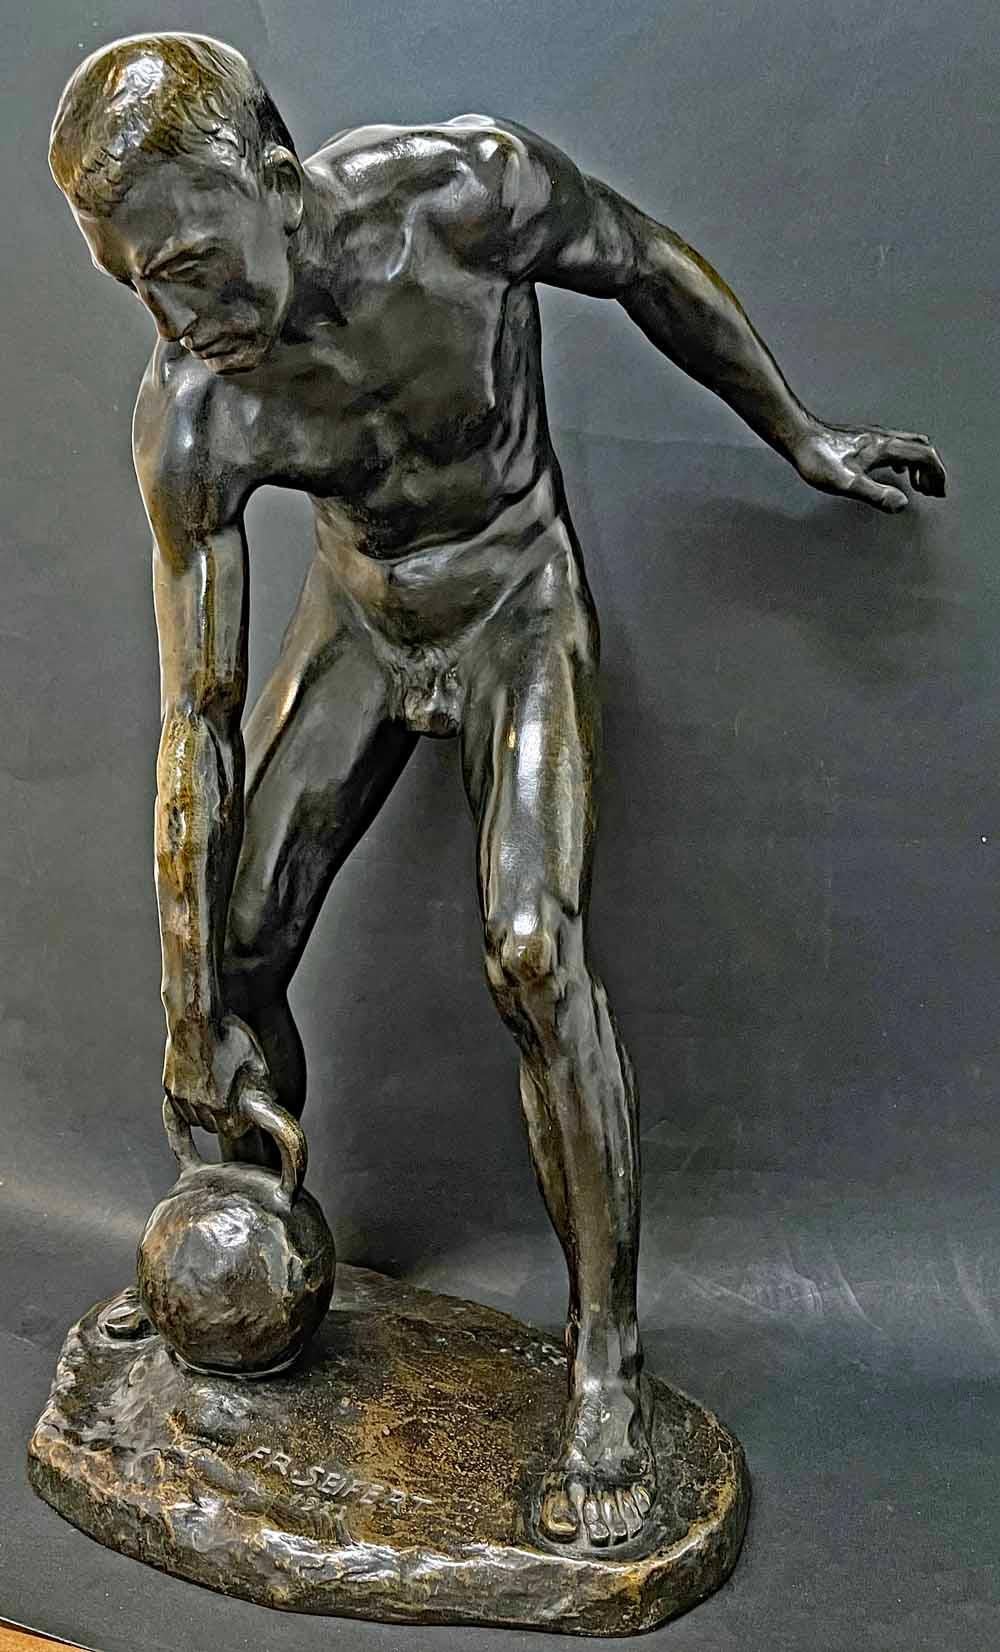 Ce bronze rarissime d'un athlète masculin nu se préparant à laisser un lourd poids de kettlebell a été sculpté par un artiste autrichien, Franz Seifert, en 1922.  Bien que Seifert soit connu pour ses personnages nus s'efforçant d'accomplir des